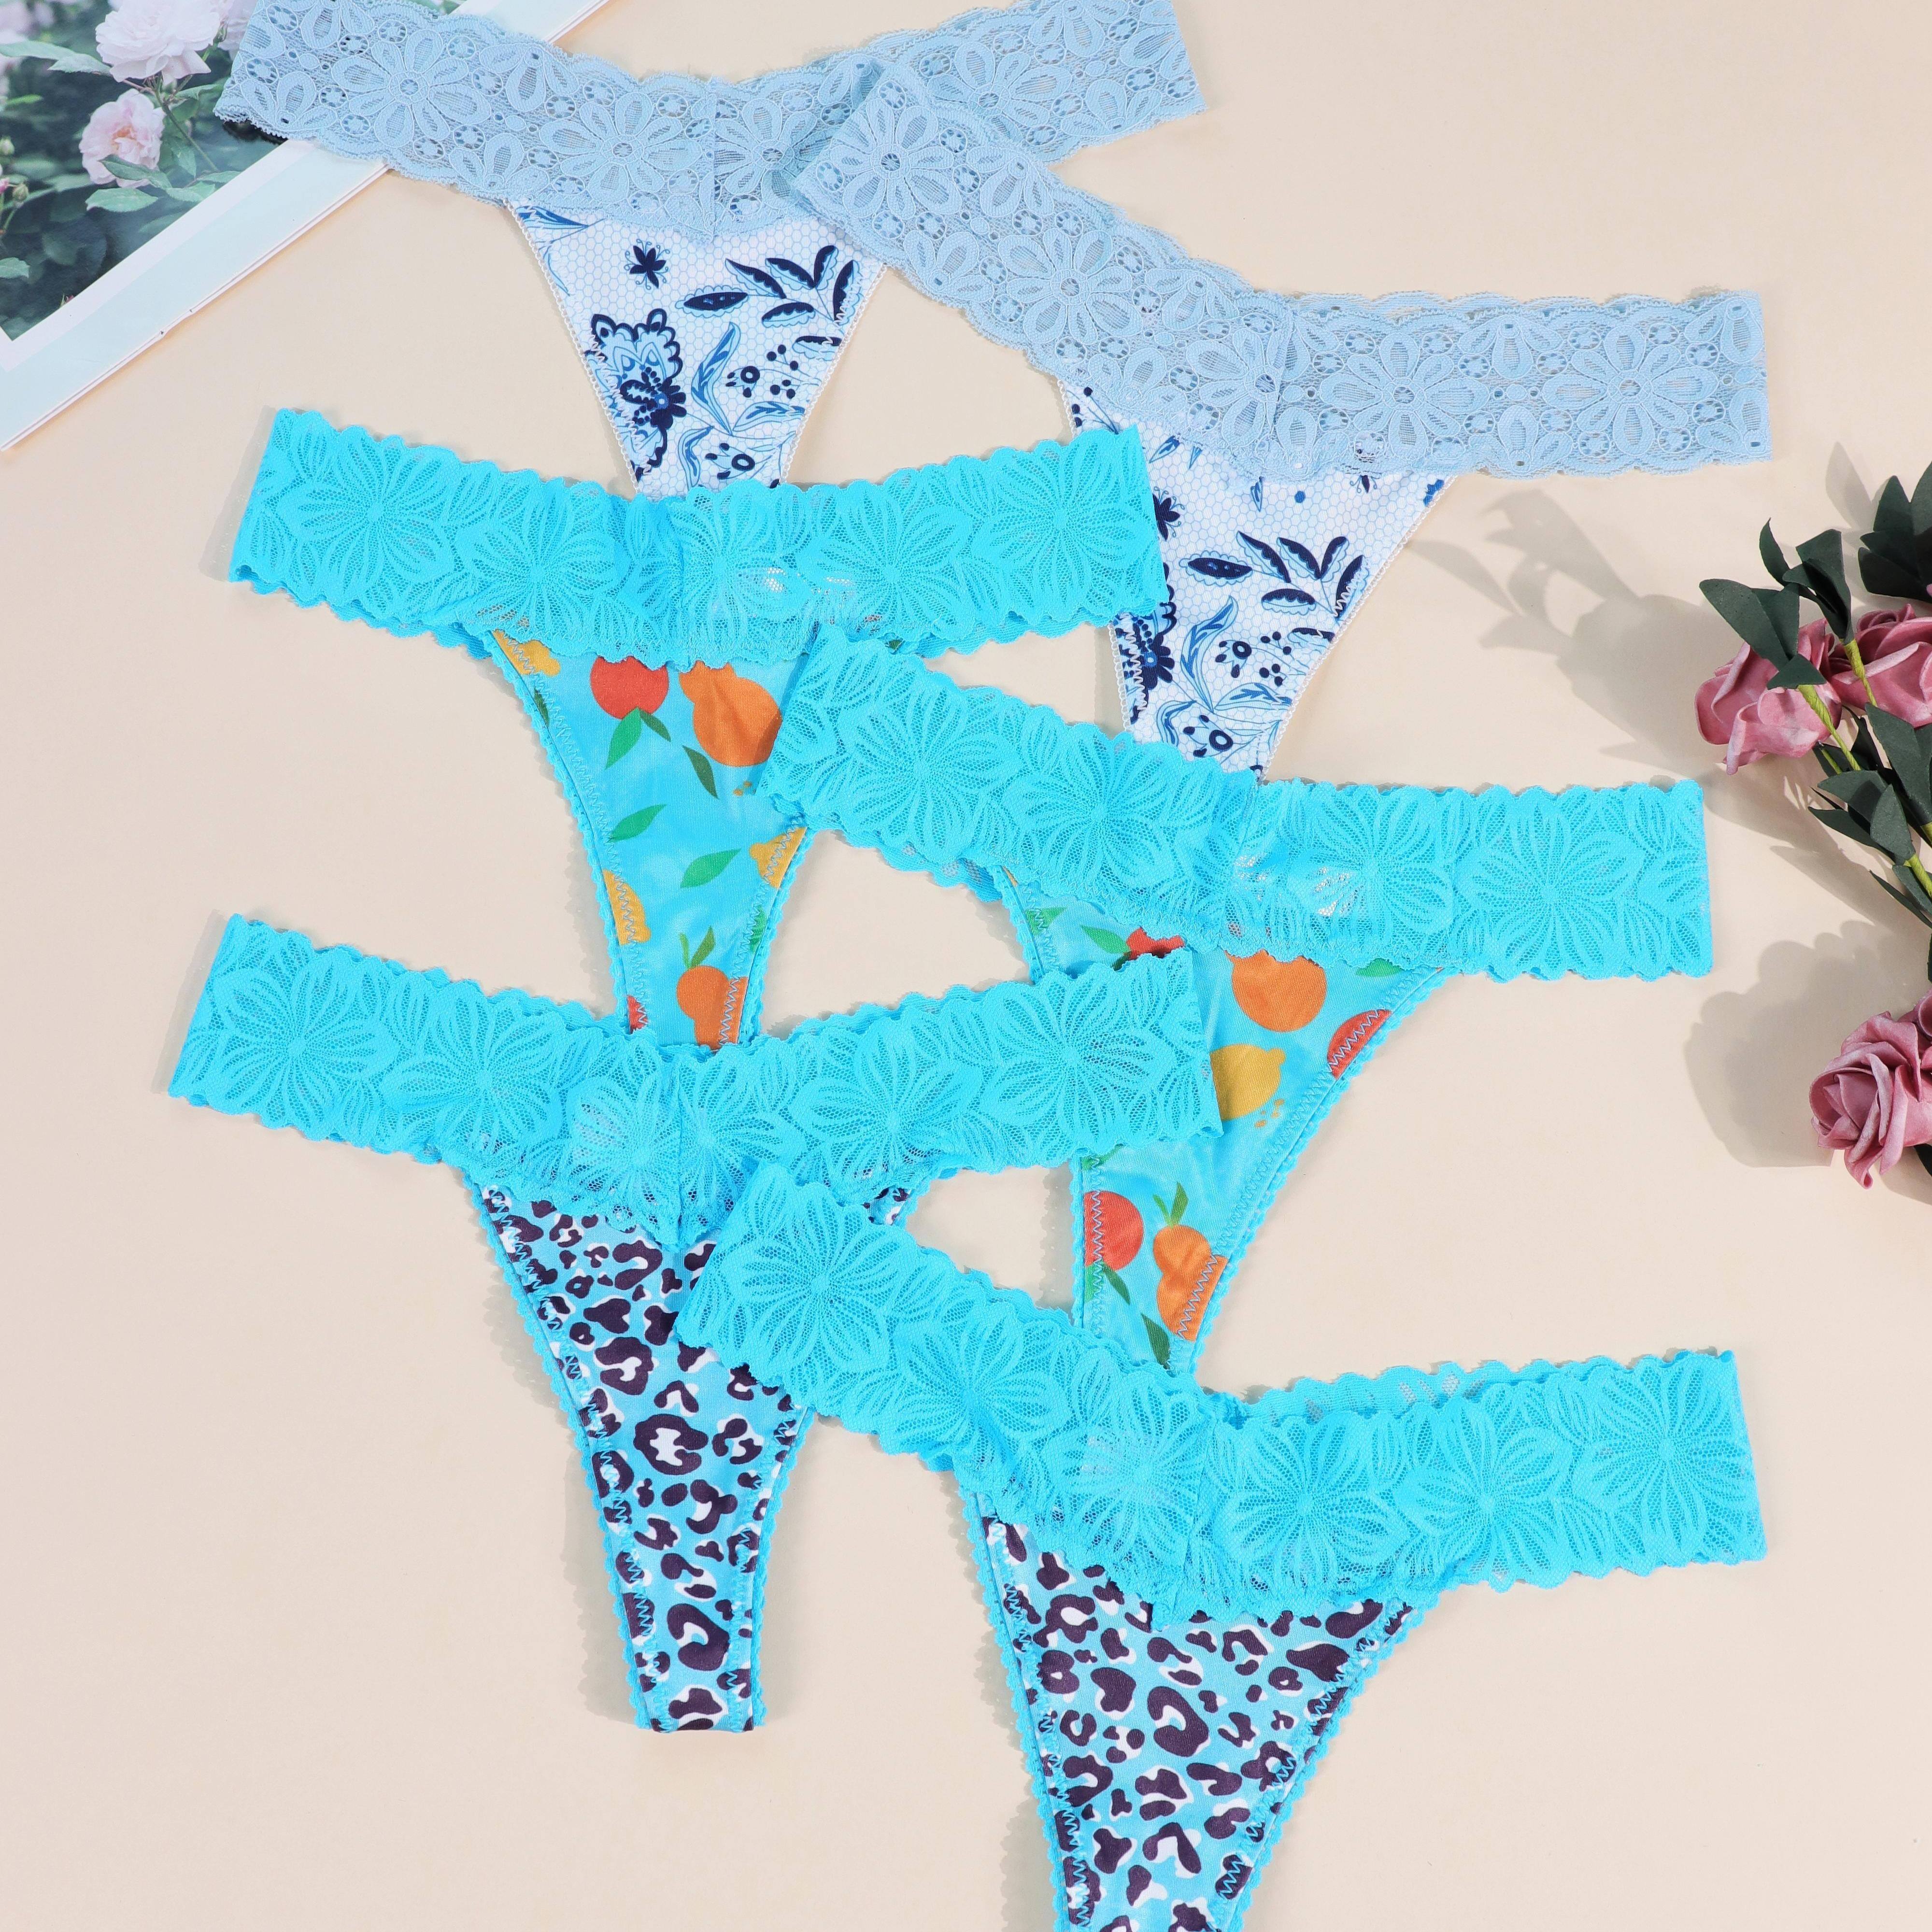 

6 Pcs Colorblock Graphic Print Lace Trim Thongs, Comfy & Breathable Intimates Panties, Women's Lingerie & Underwear